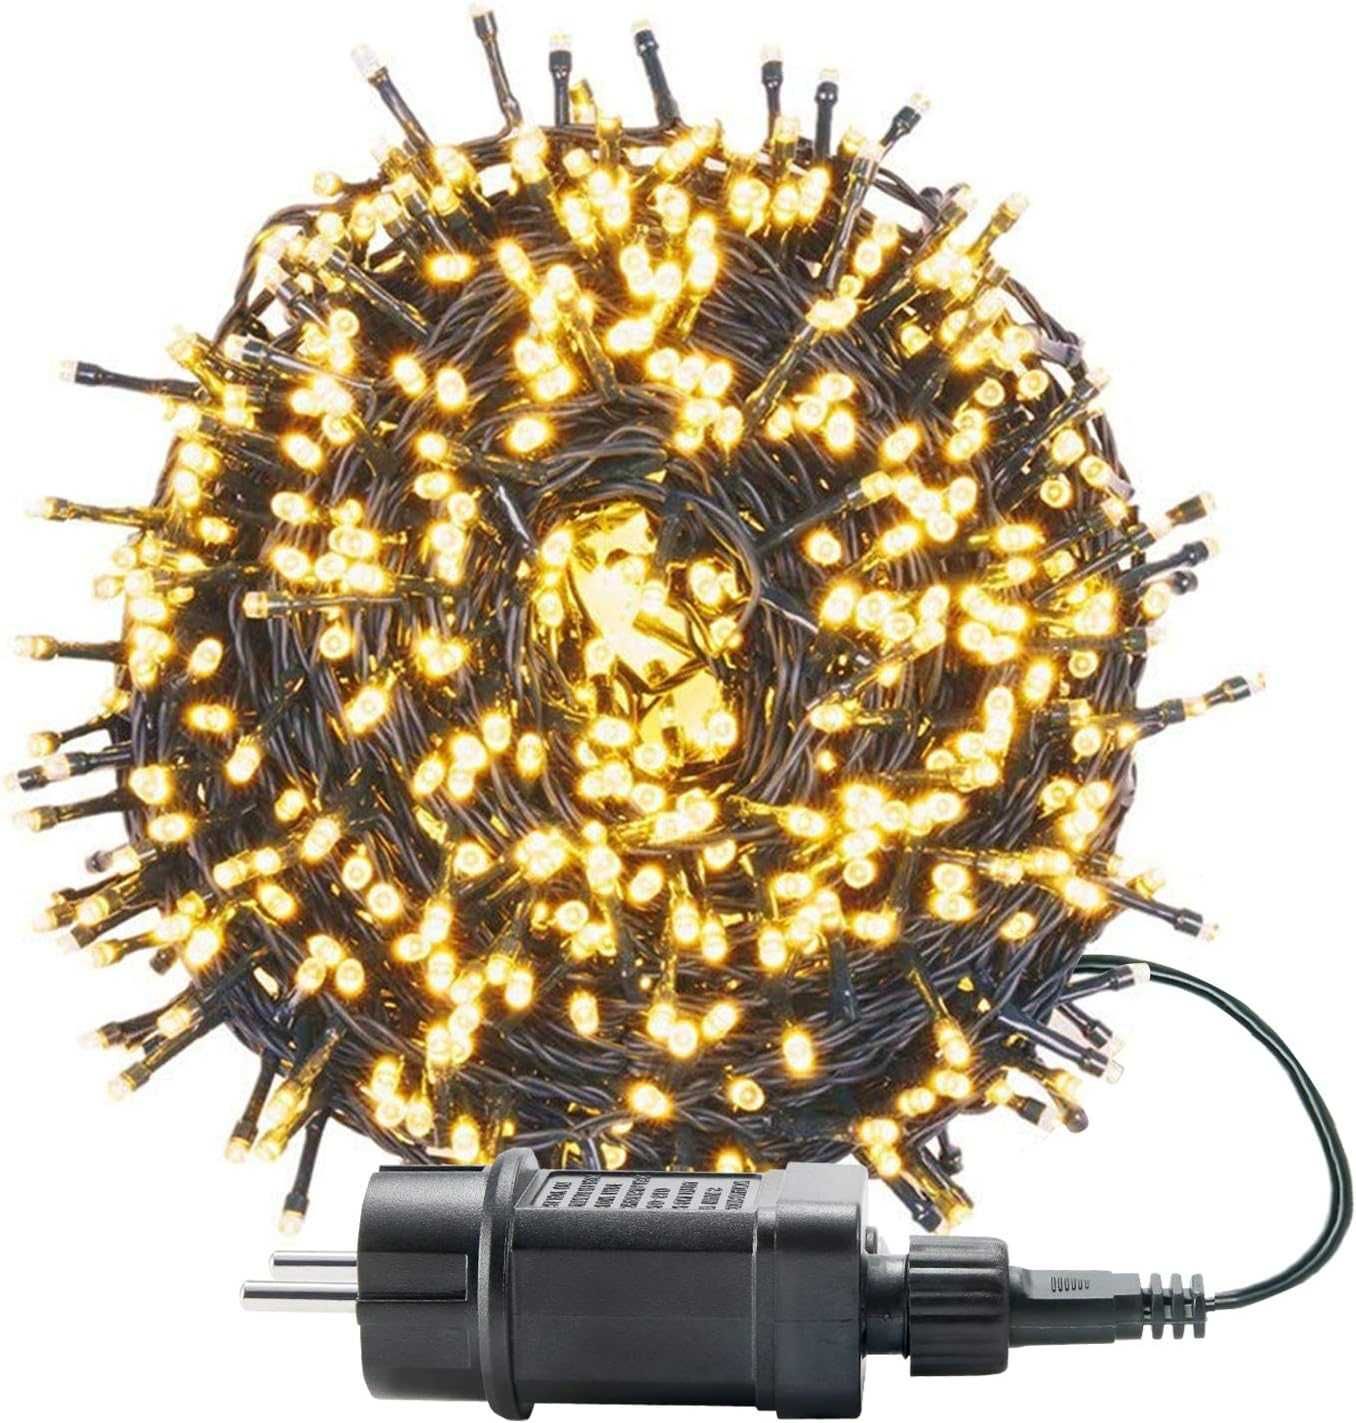 363 UISEBRT Łańcuch świetlny z 300 diodami LED, 30 m